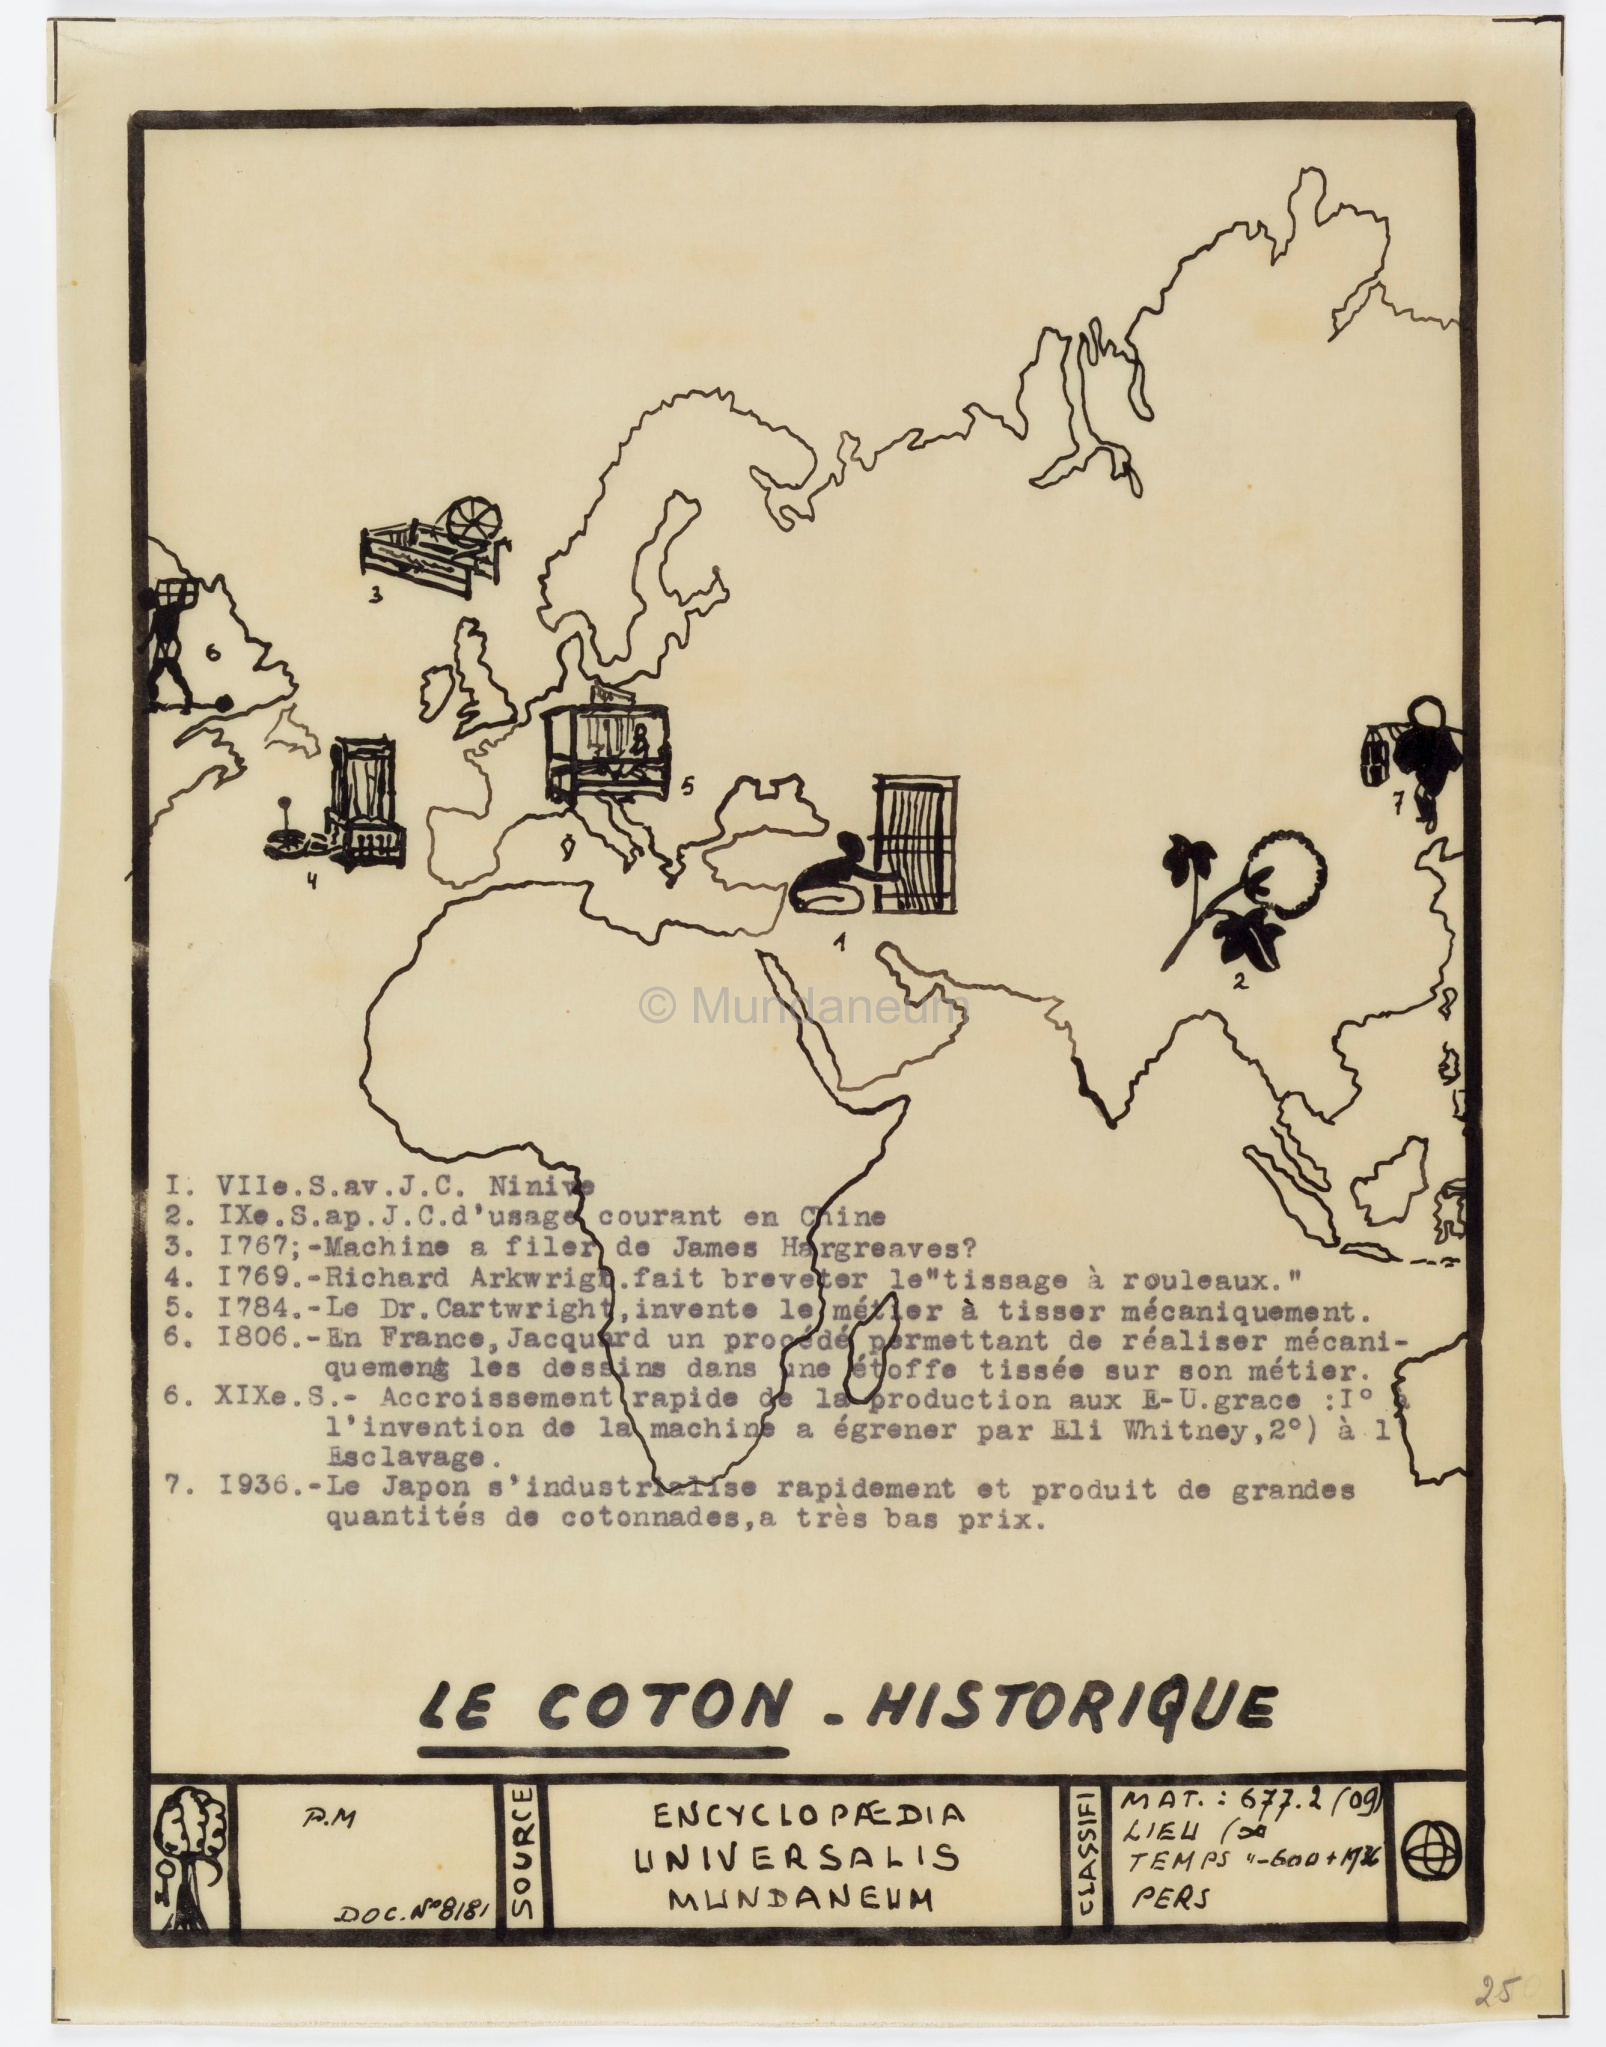 Le coton – Historique